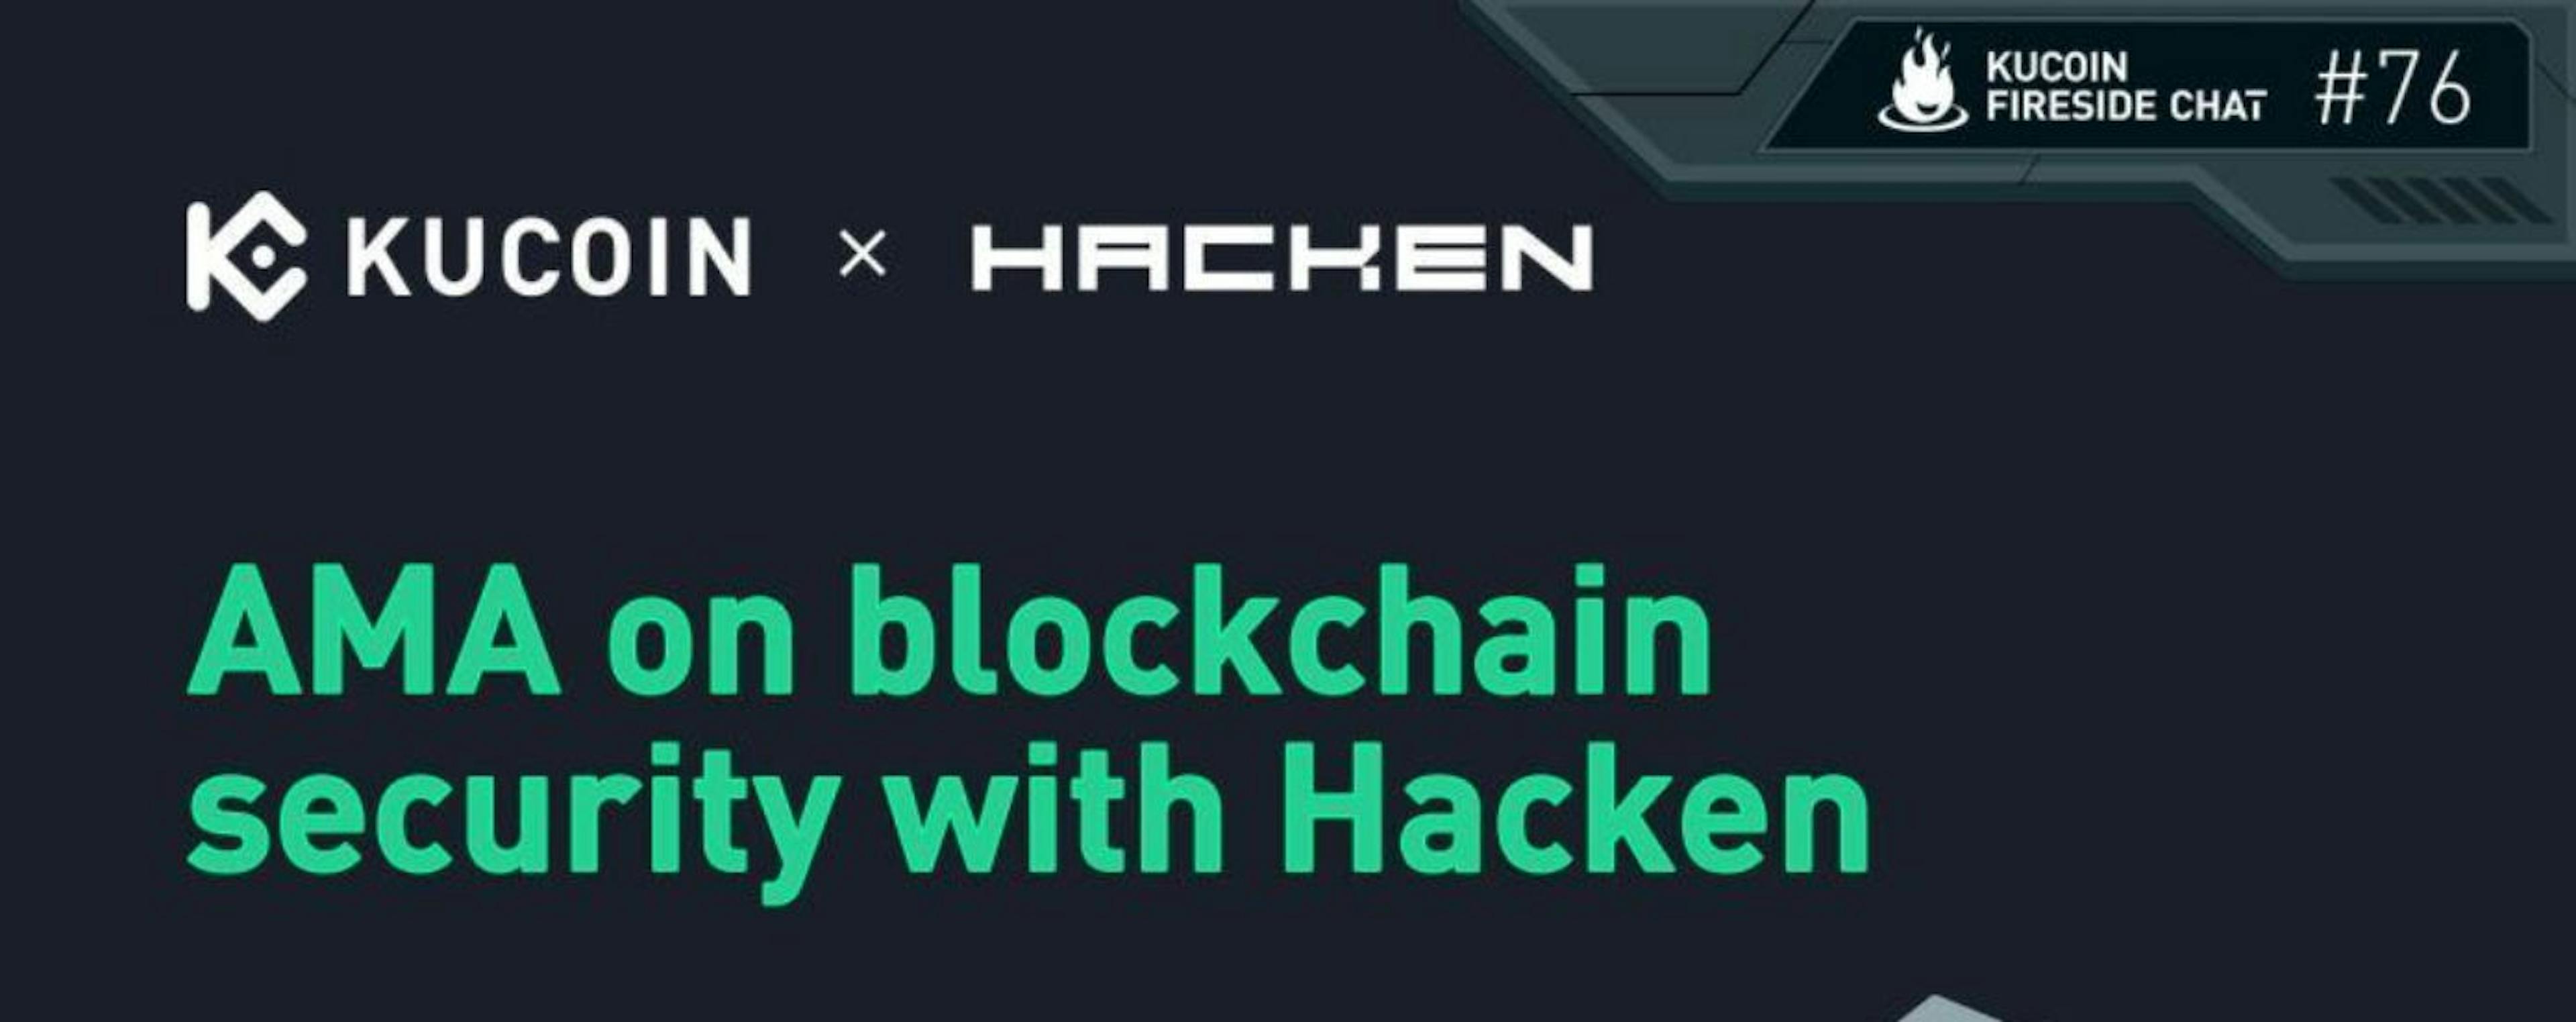 featured image - KuCoin と Hacken によるブロックチェーンのセキュリティ